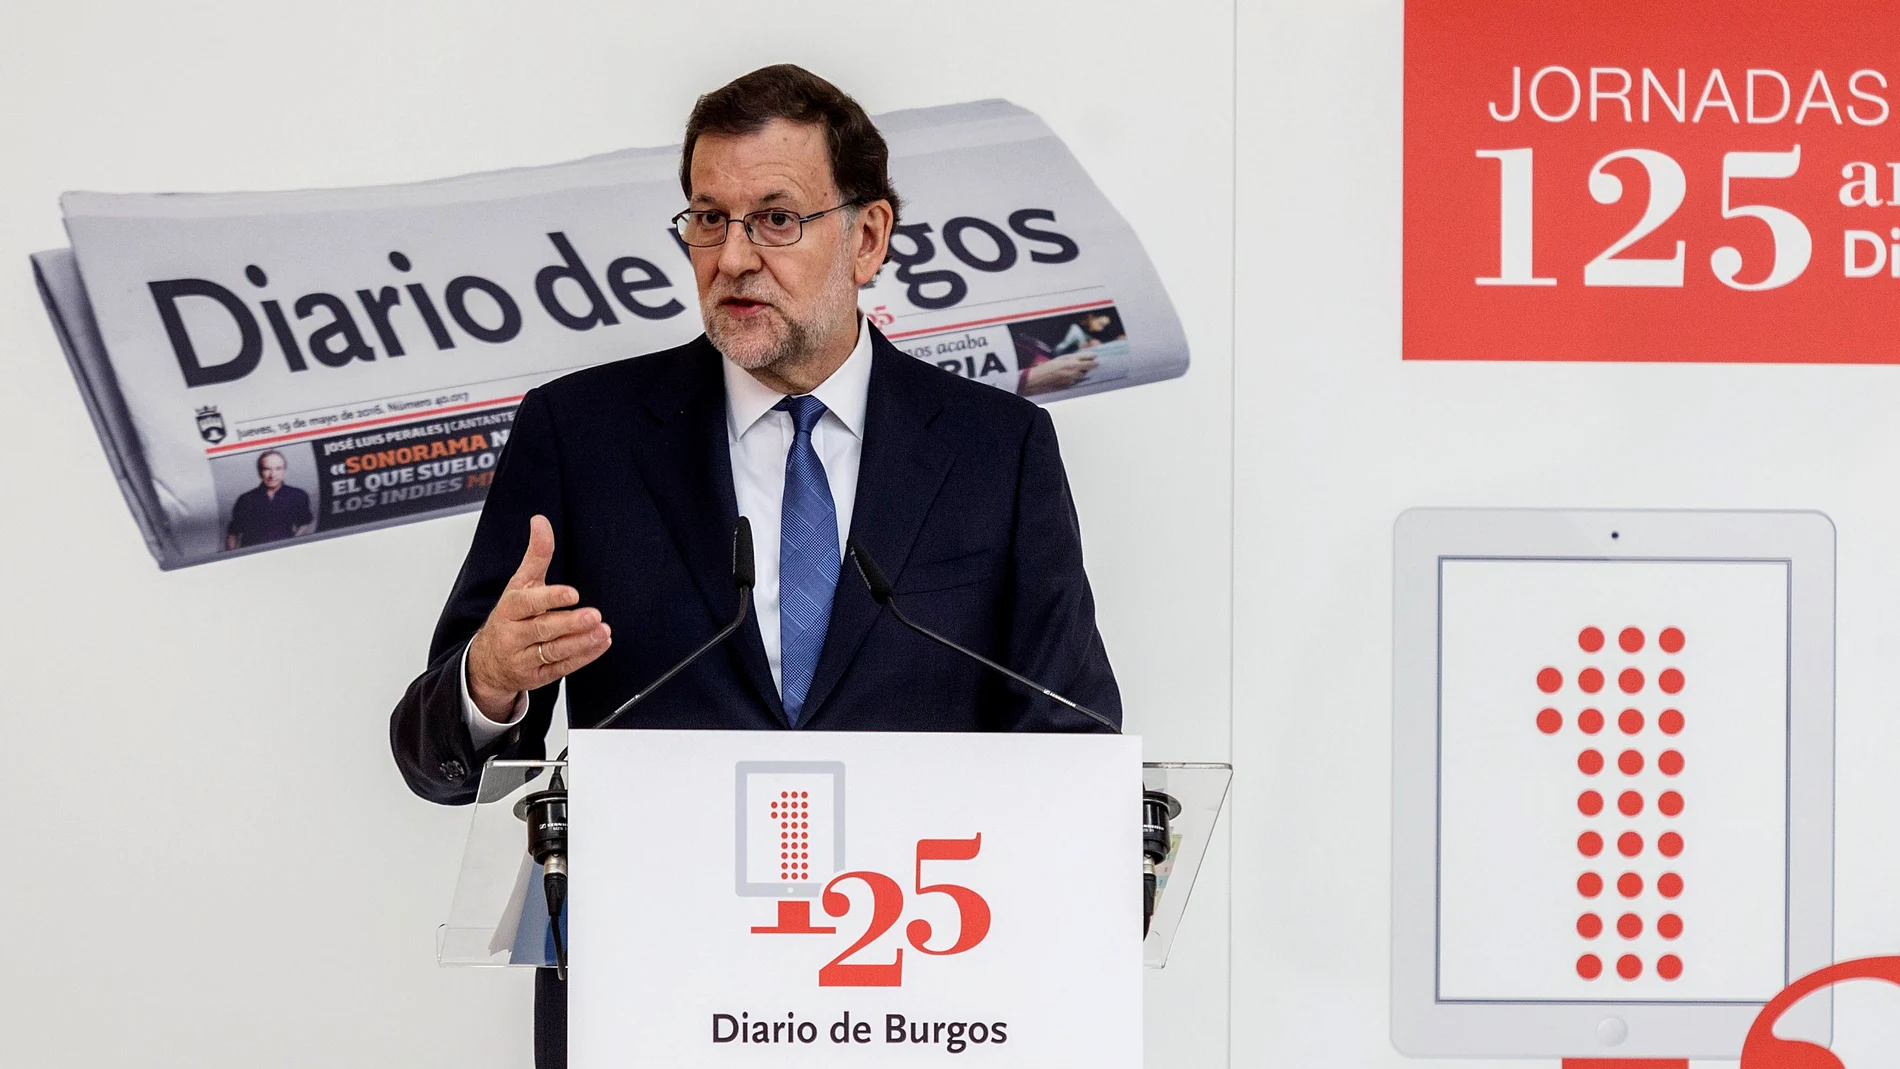  El presidente del Gobierno en funciones, Mariano Rajoy